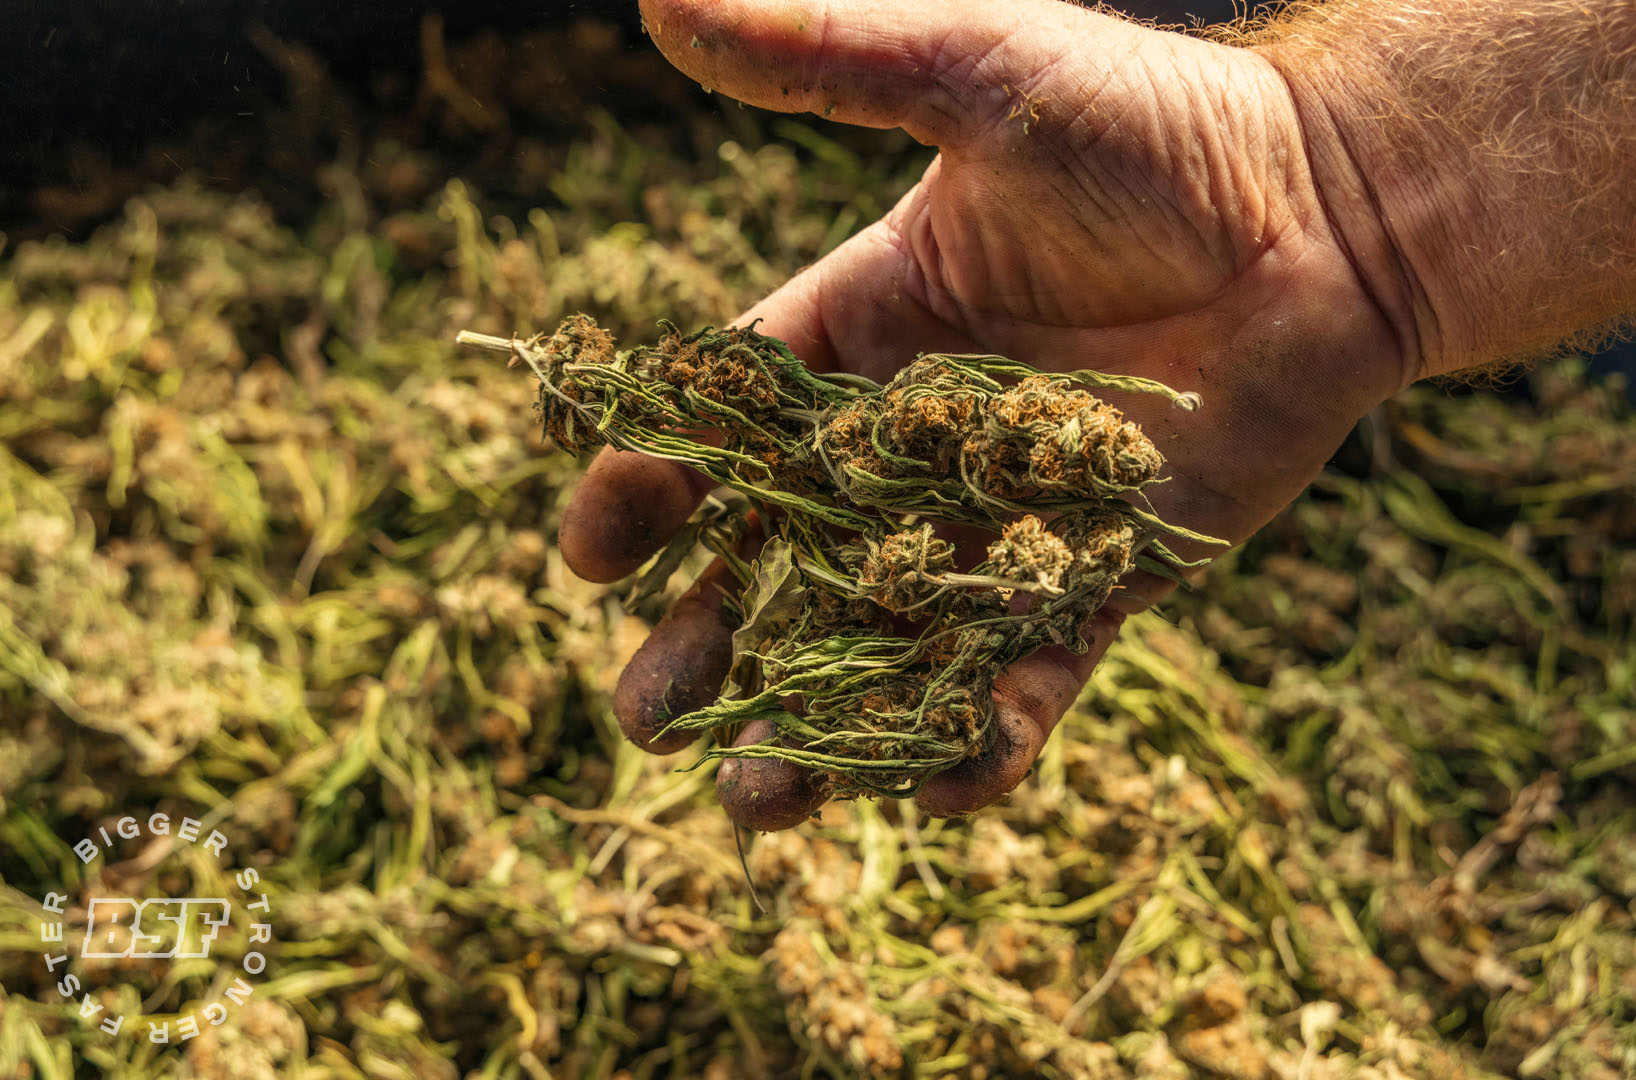 ¿Cuándo cosechar cannabis?